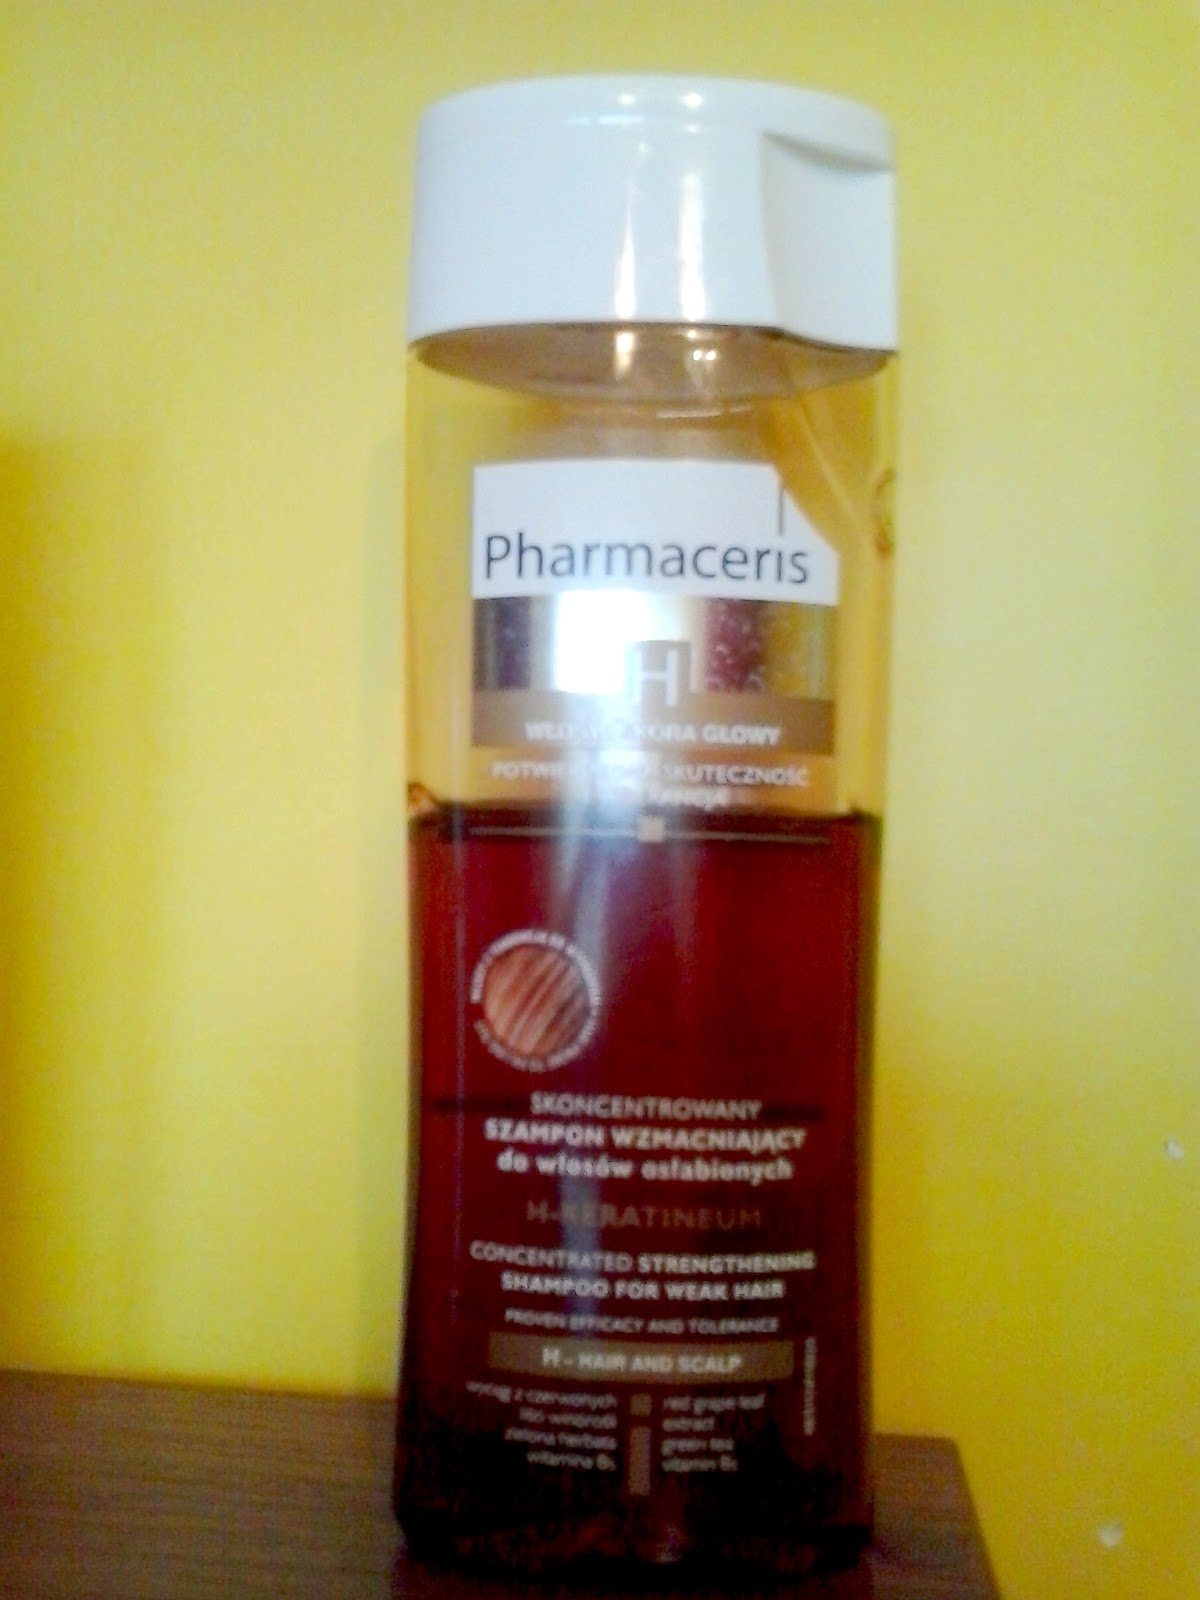 Pharmaceris H, Keratineum (Skoncentrowany szampon wzmacniający do włosów osłabionych)